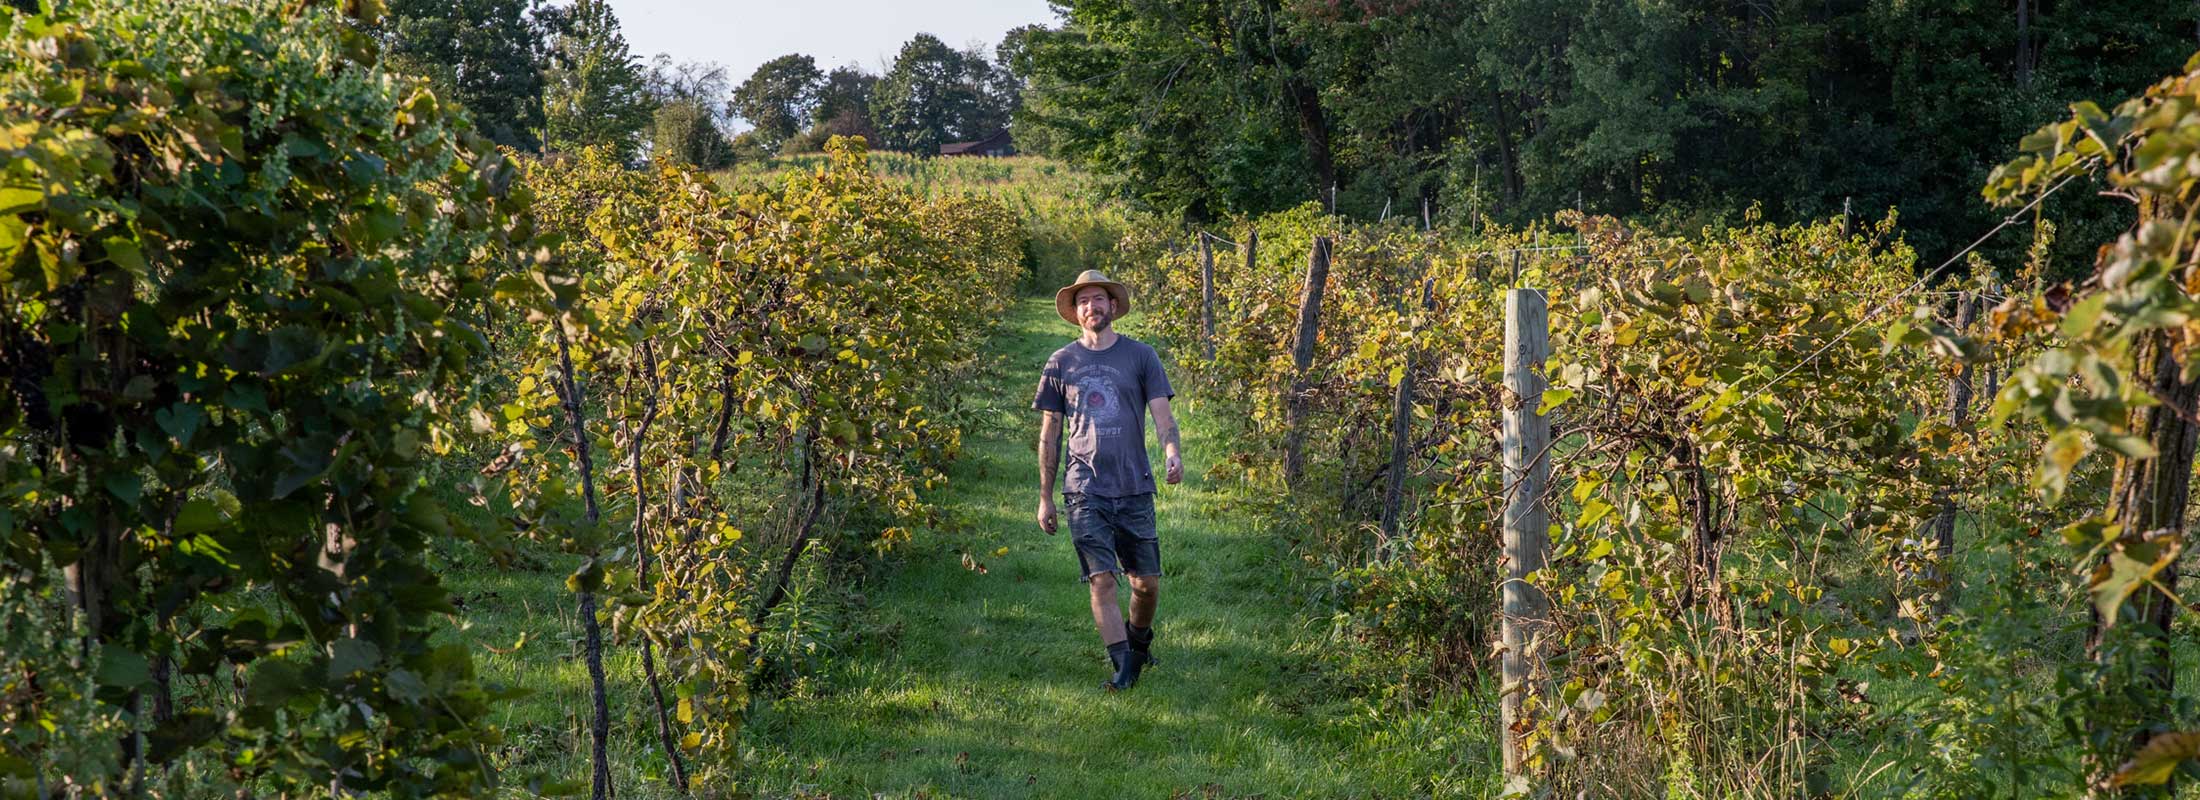 A farmer strides through a vineyard in sunshine